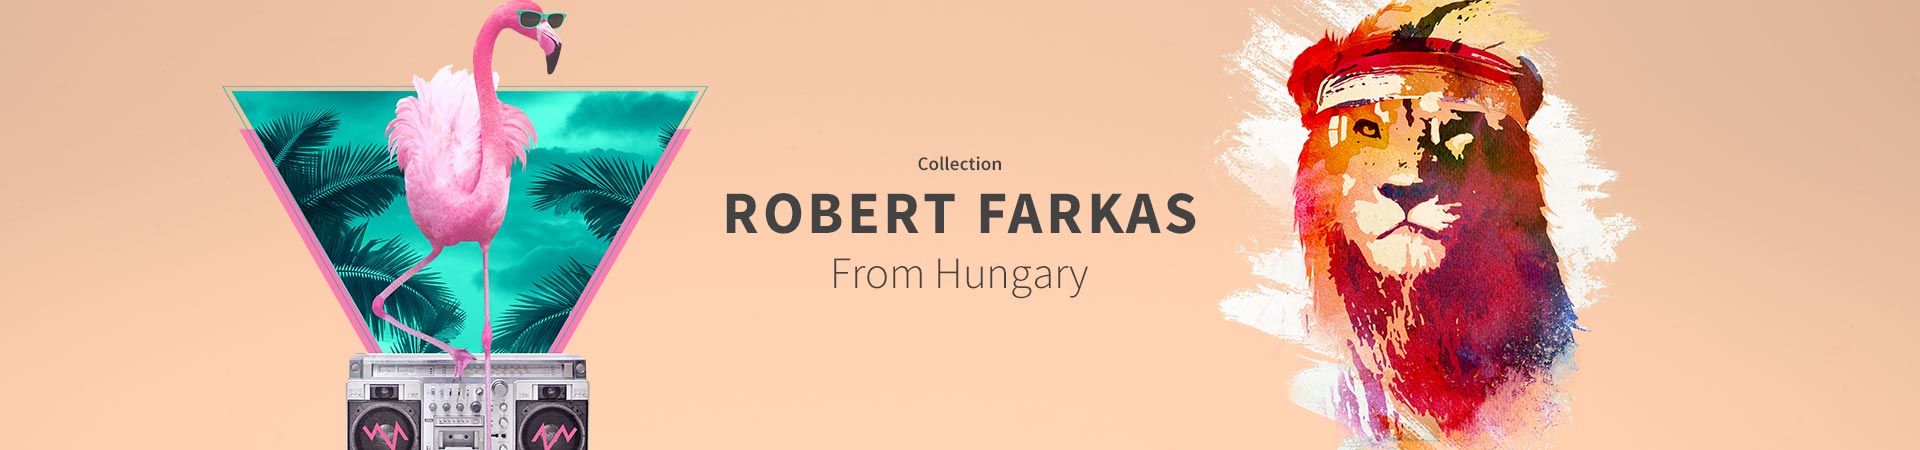 Collection Robert Farkas